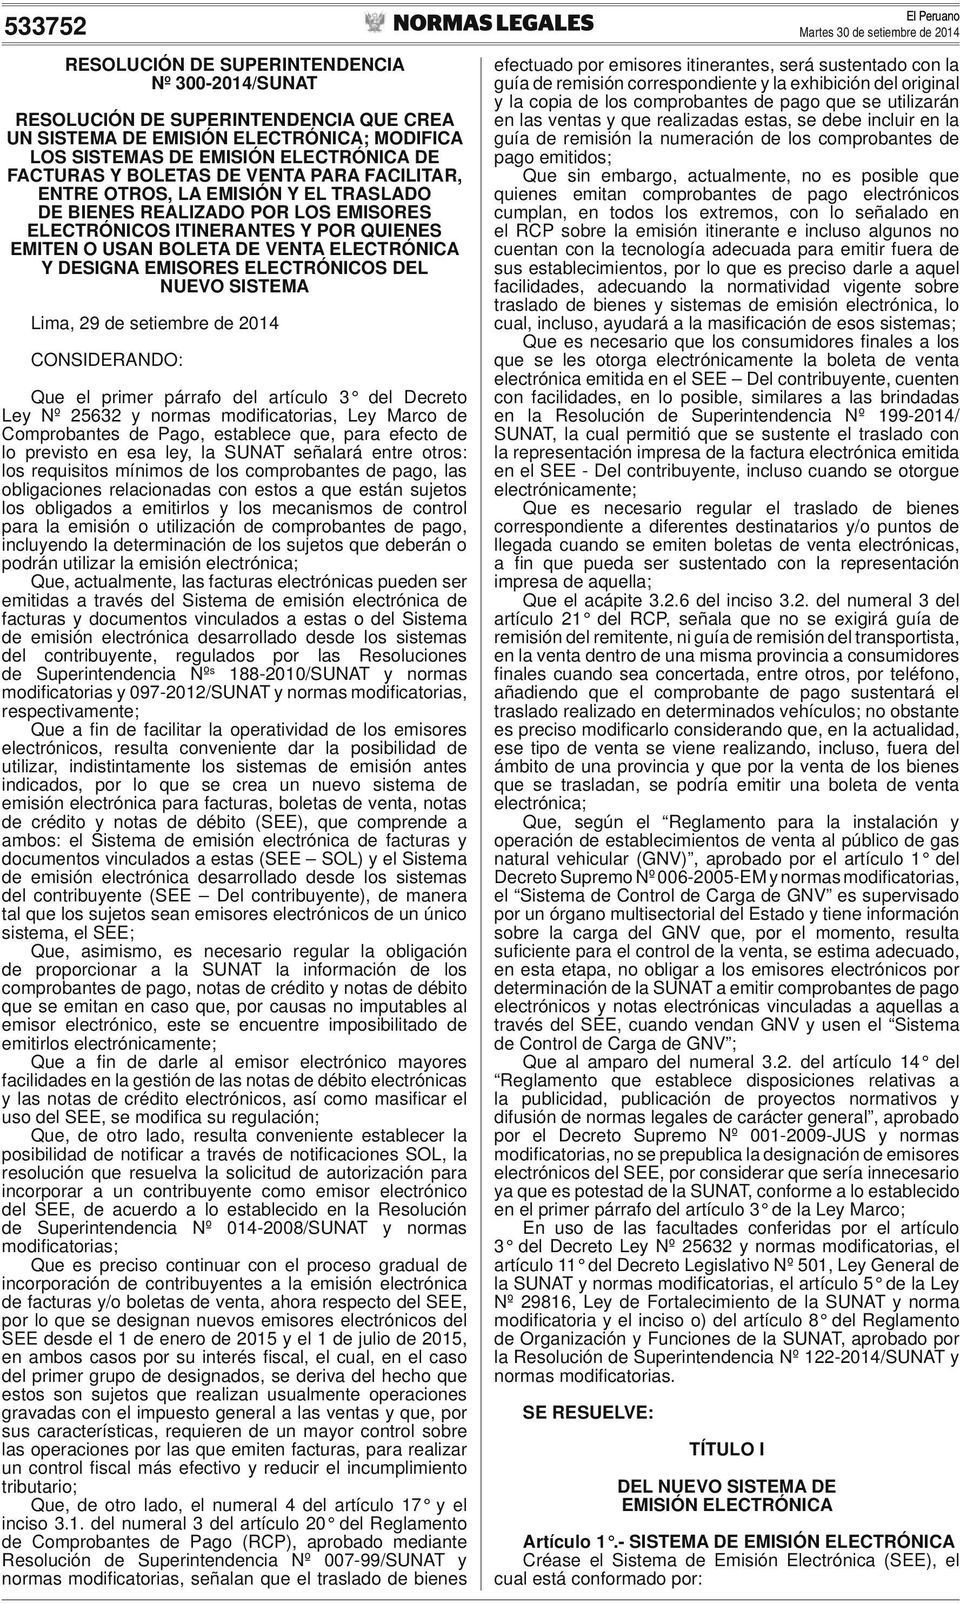 ELECTRÓNICOS DEL NUEVO SISTEMA Lima, 29 de setiembre de 2014 CONSIDERANDO: Que el primer párrafo del artículo 3 del Decreto Ley Nº 25632 y normas modifi catorias, Ley Marco de Comprobantes de Pago,